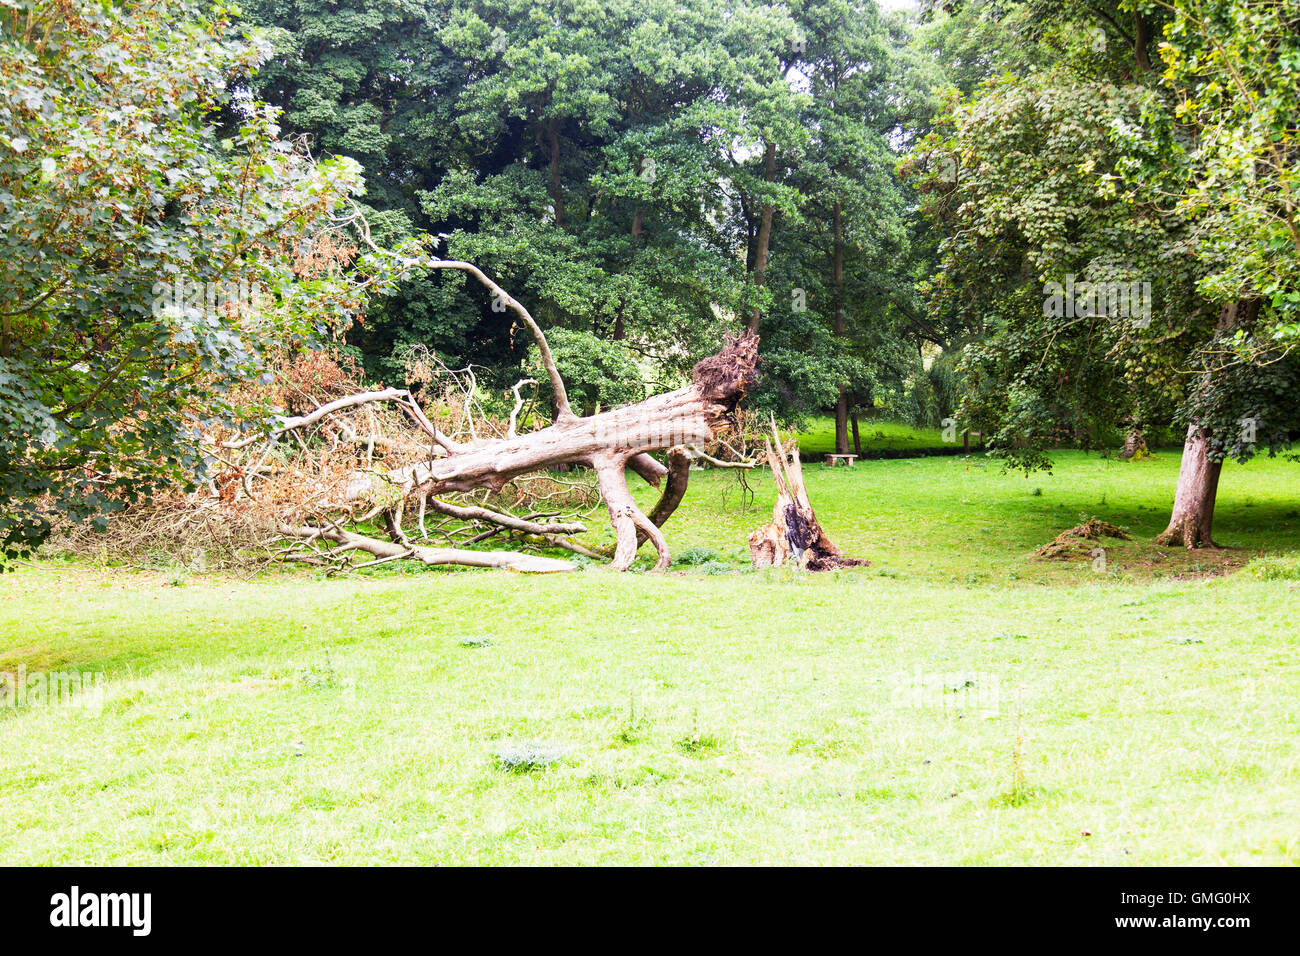 Arbre brisé les dégâts causés aux arbres cassé à la base du tronc pourri Louth Lincolnshire UK Angleterre GO Banque D'Images